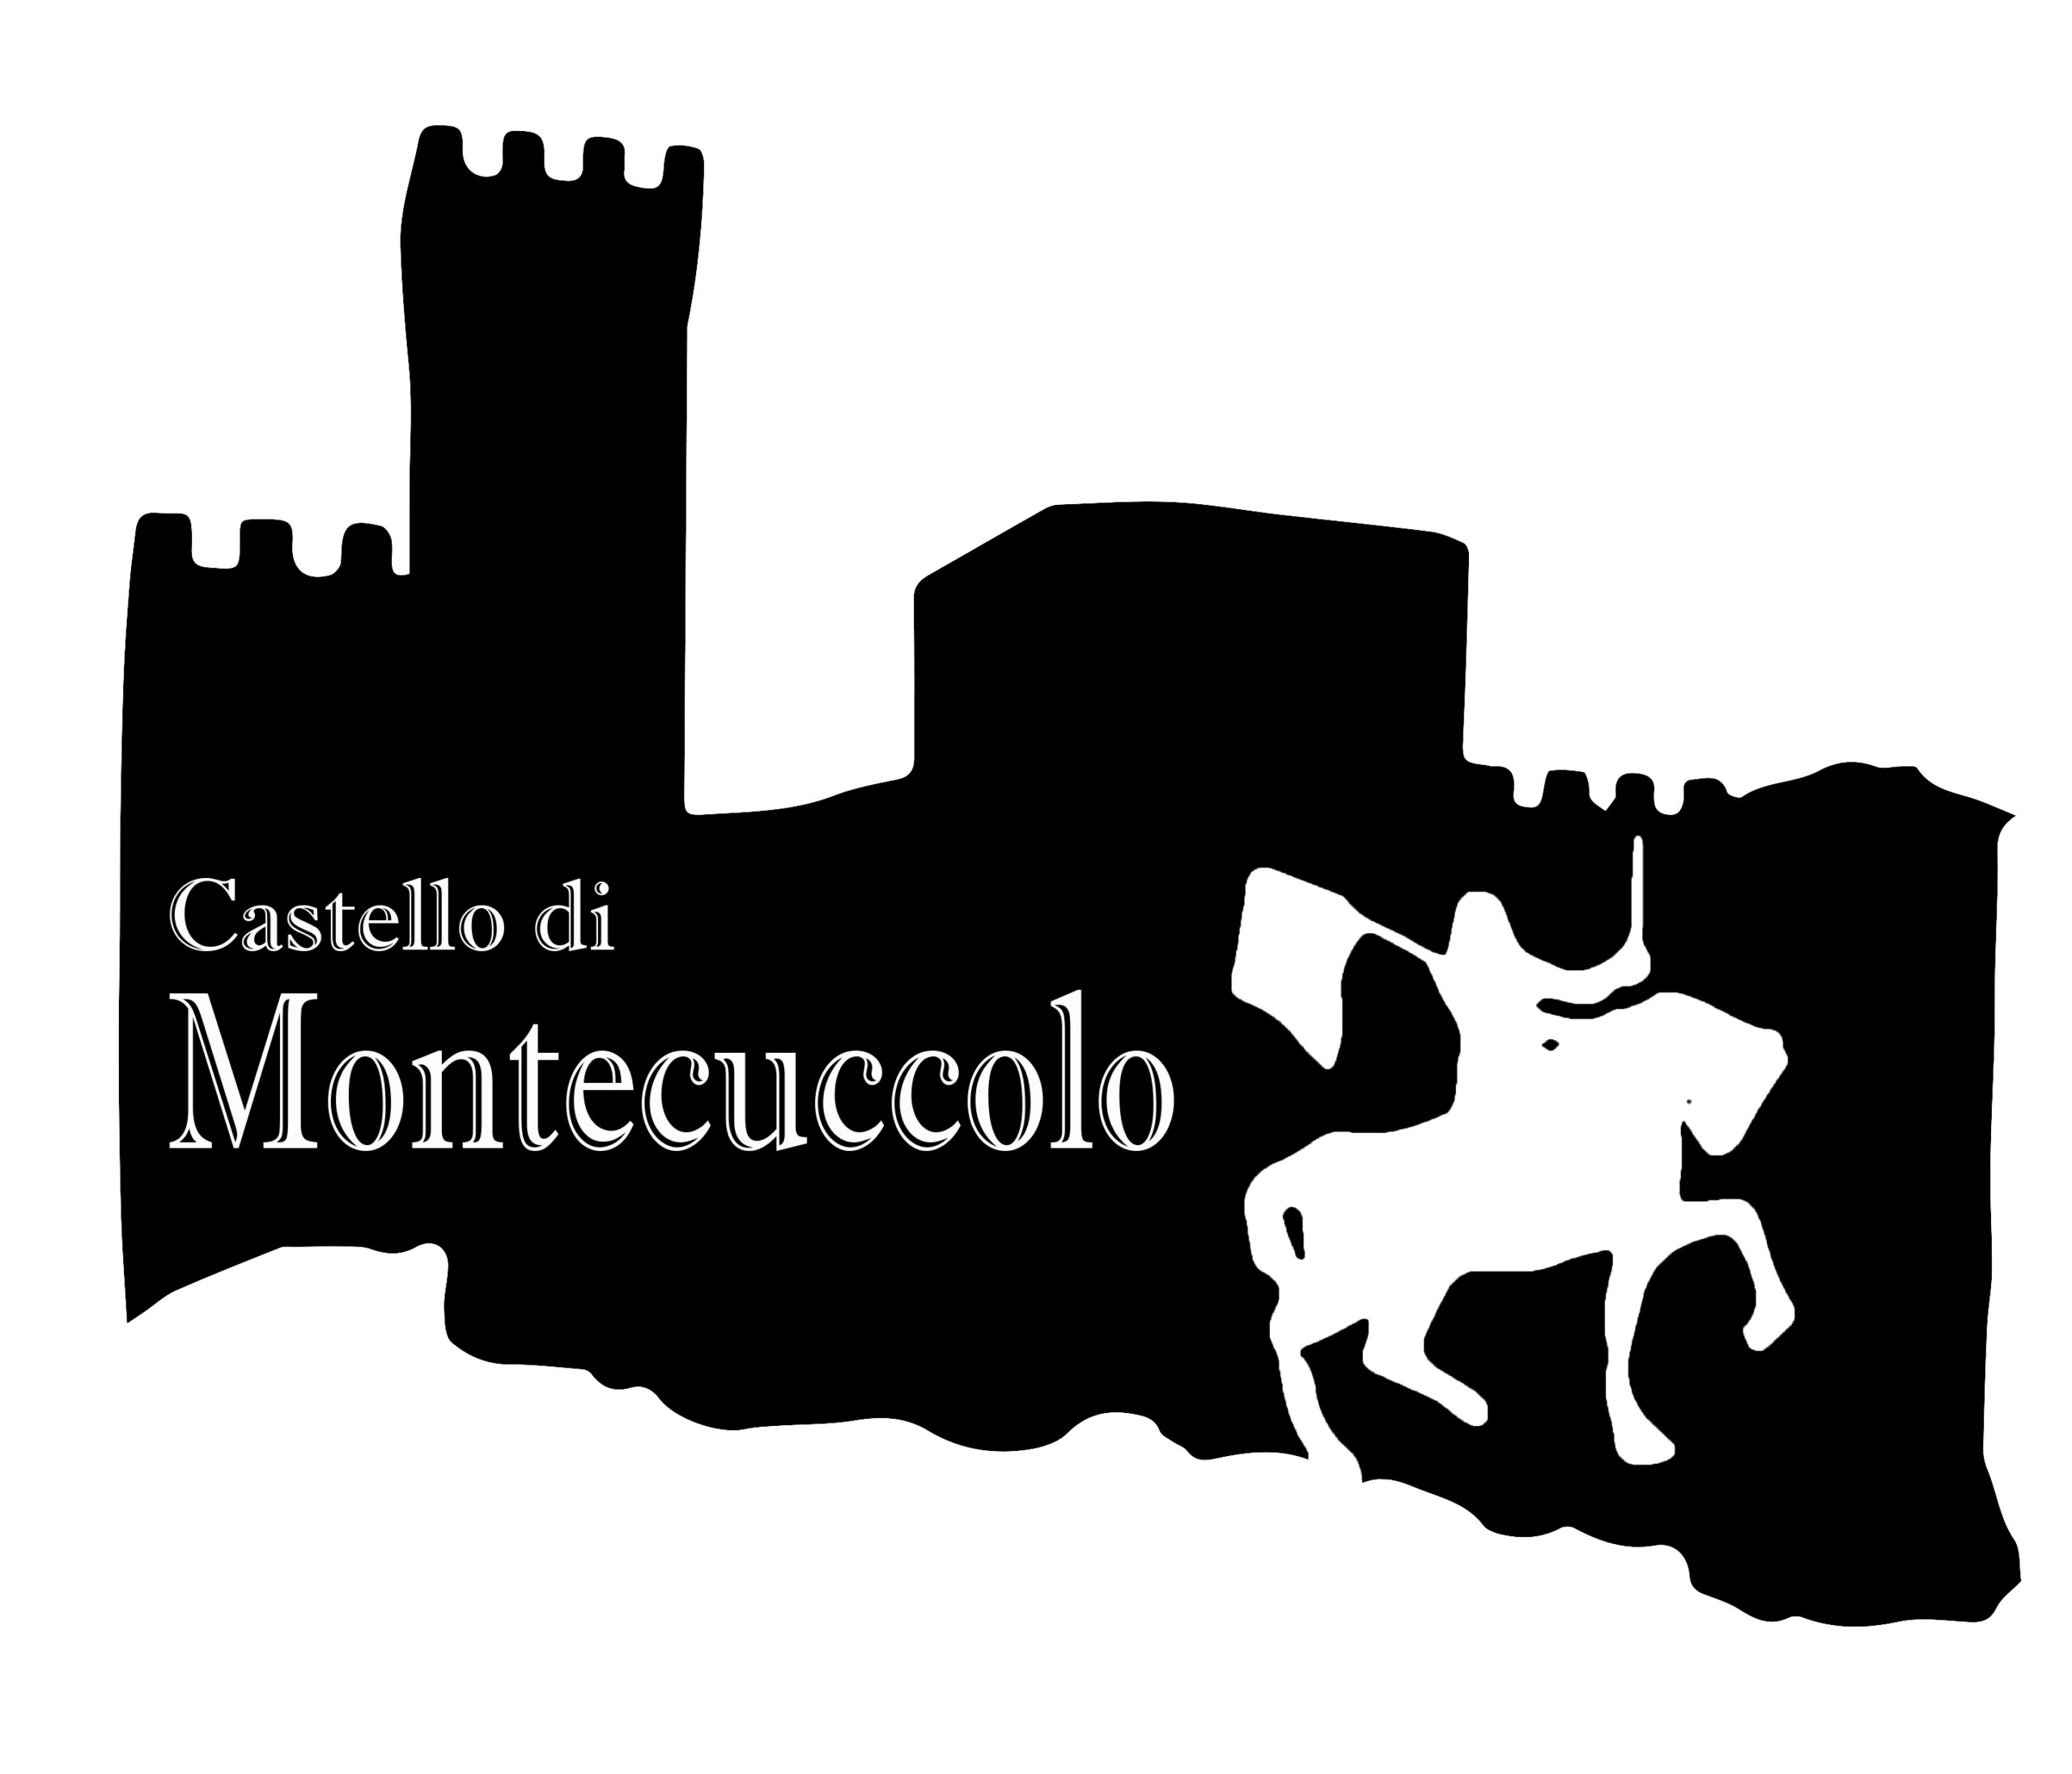 *Sito ufficiale del Castello di Montecuccolo